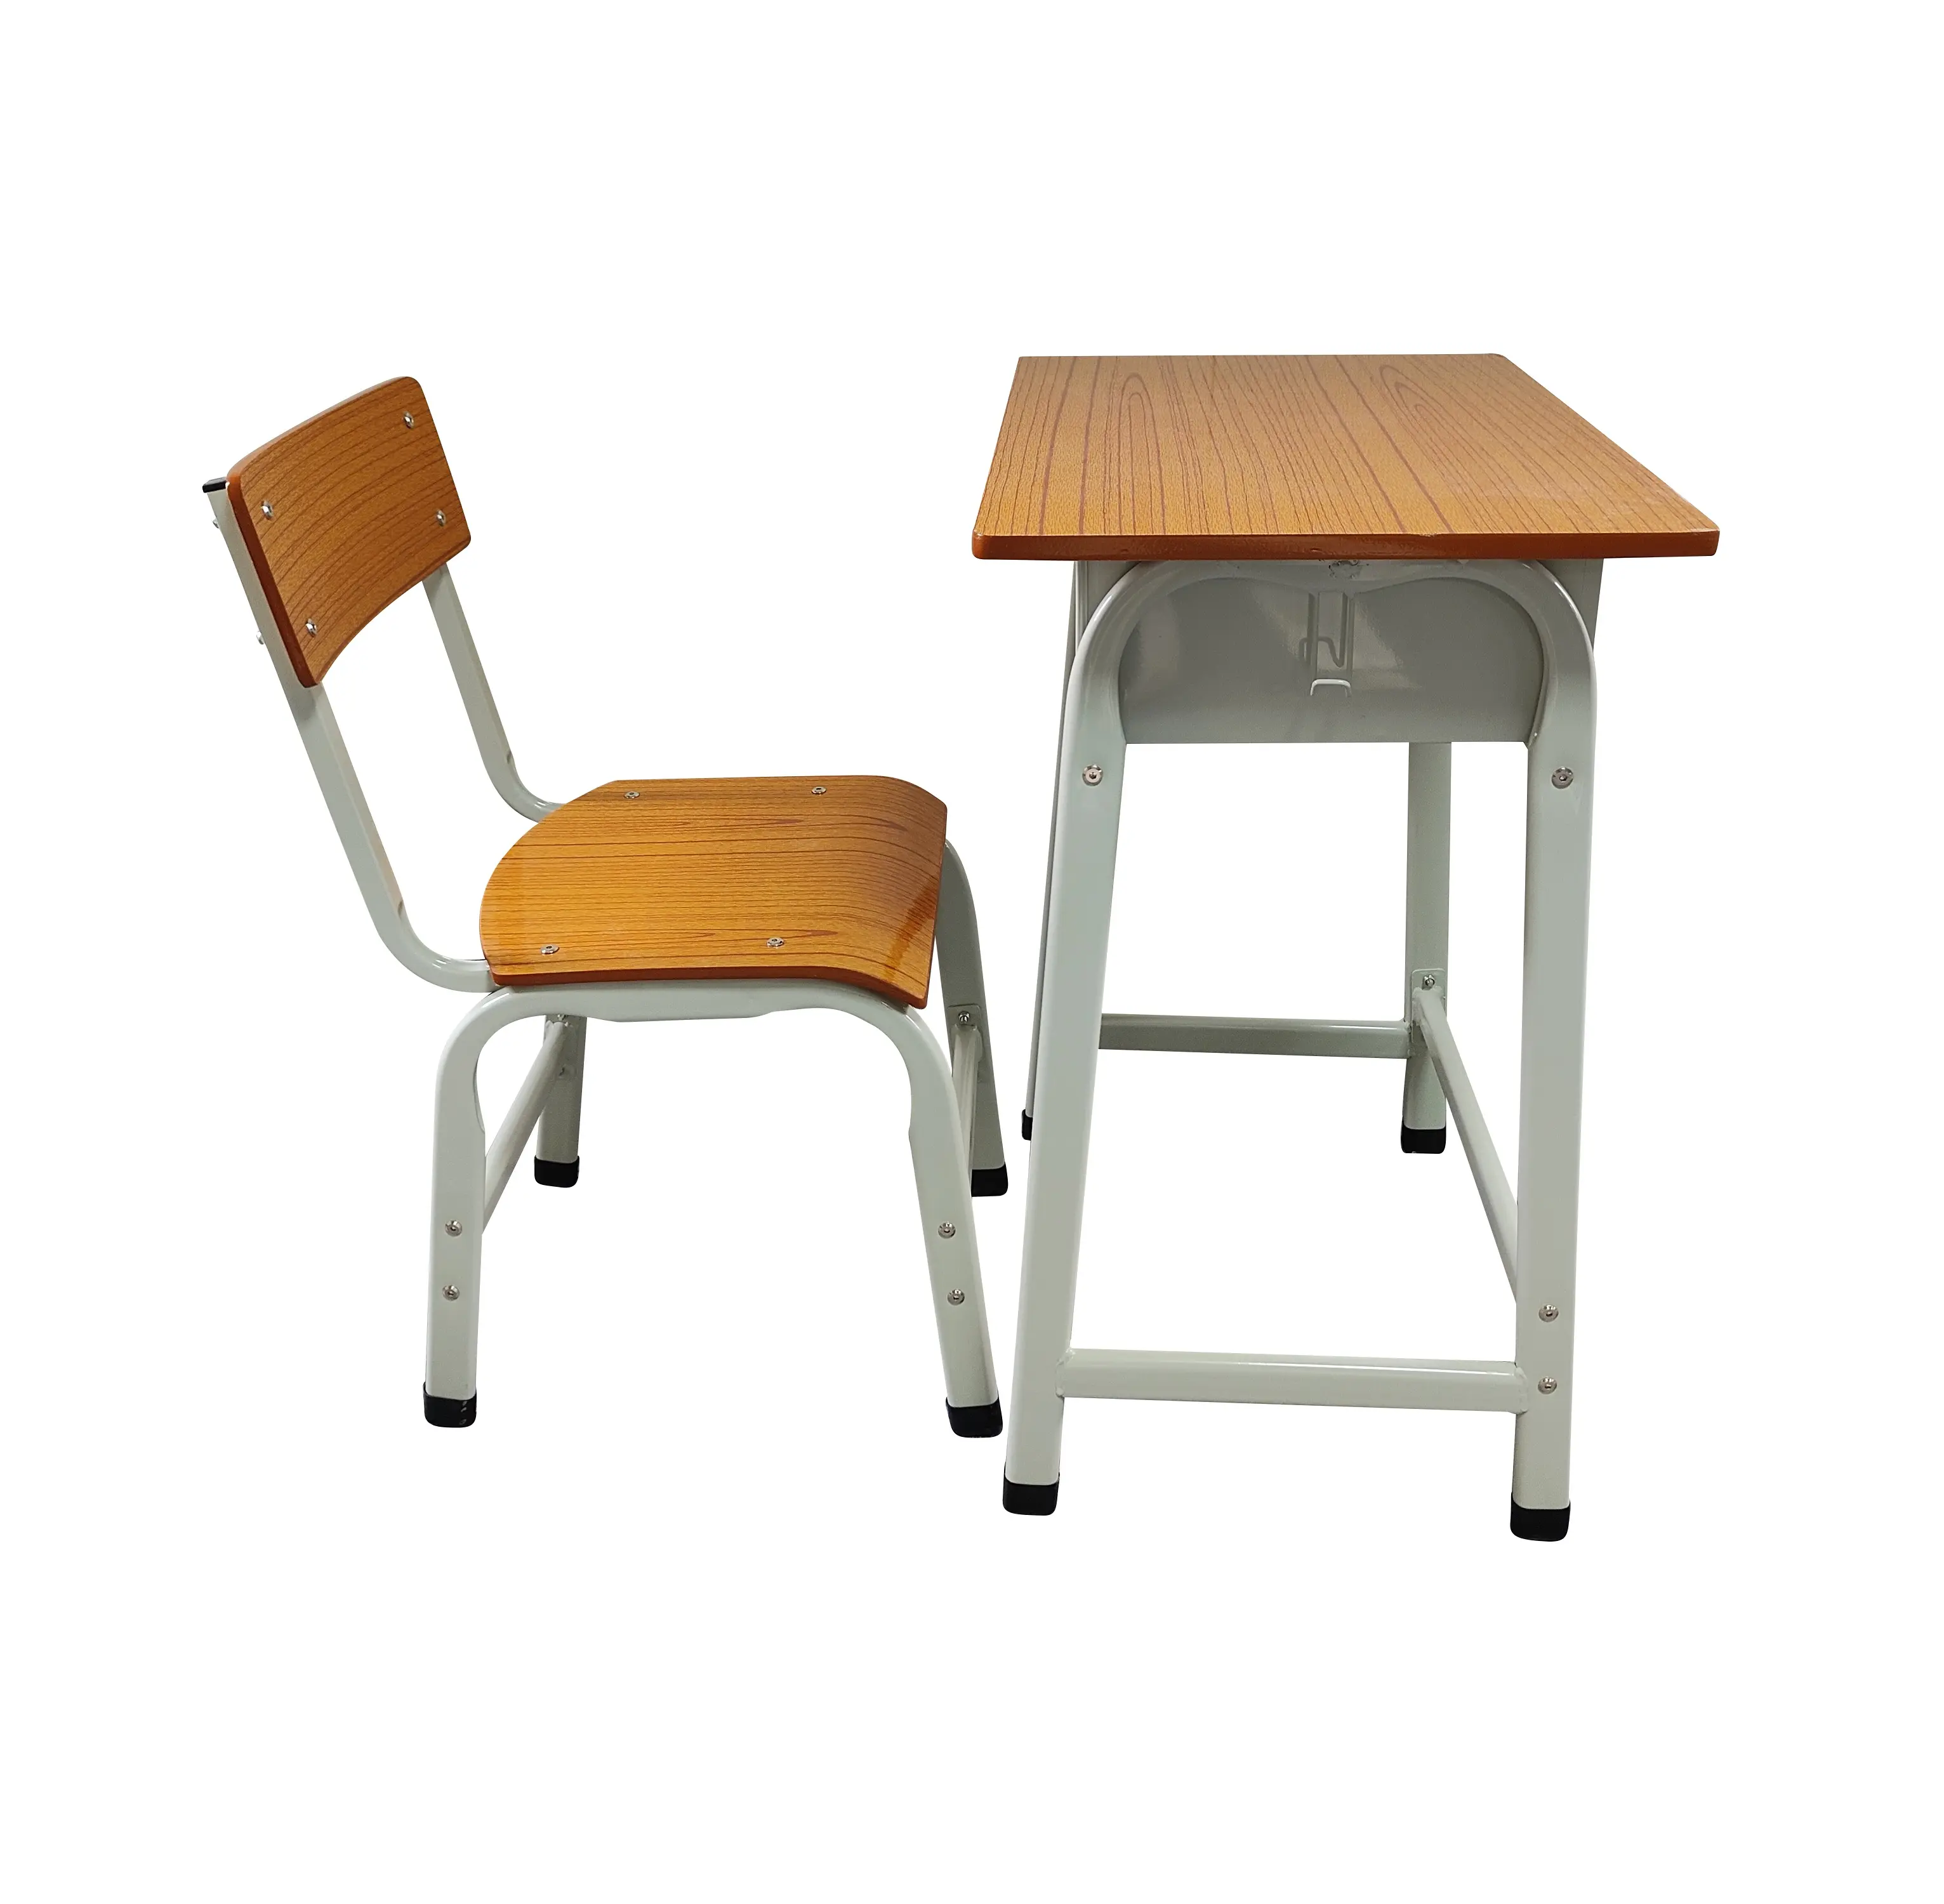 Günstige Studenten-Schreibtische und -Stühle aus Metall minimalistisches Design Schulmöbel für Haus Büro Schlafzimmer und Wohnzimmer für Studenten